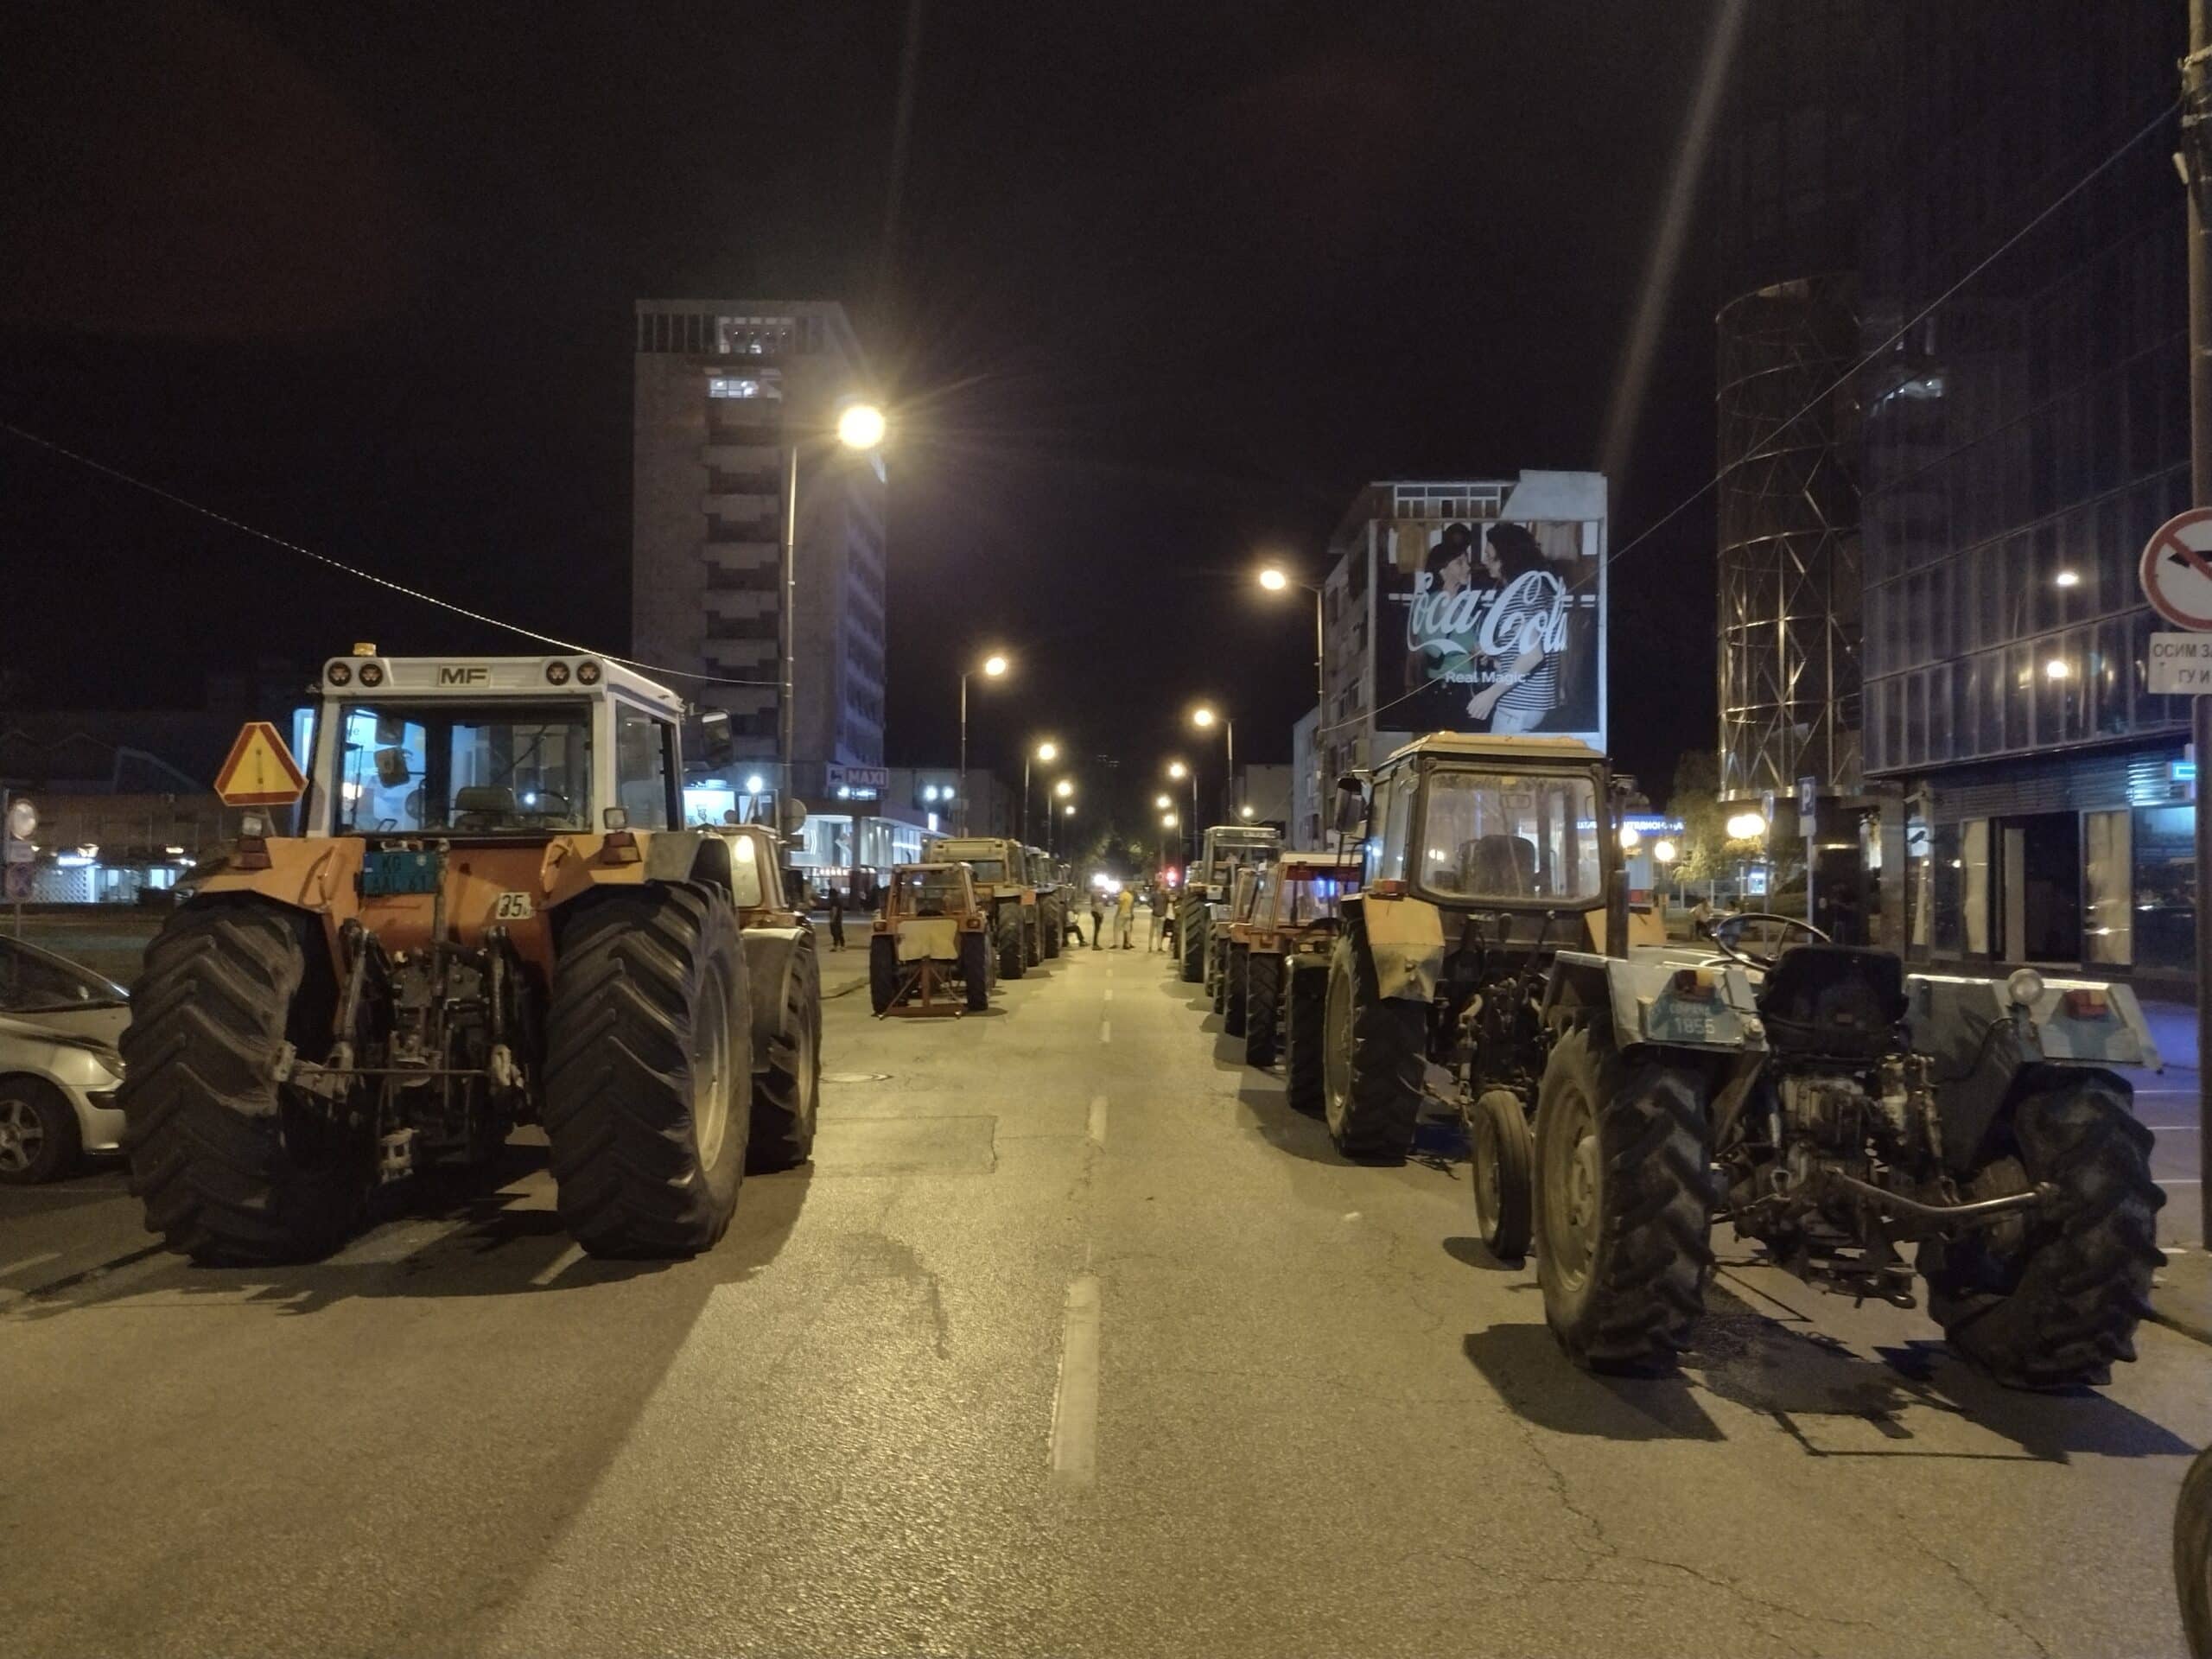 "Da l' je asfalt ili blato, Šumadinac trpi bato": Reporter Danasa proveo noć sa poljoprivrednicima u blokadi Kragujevca 2